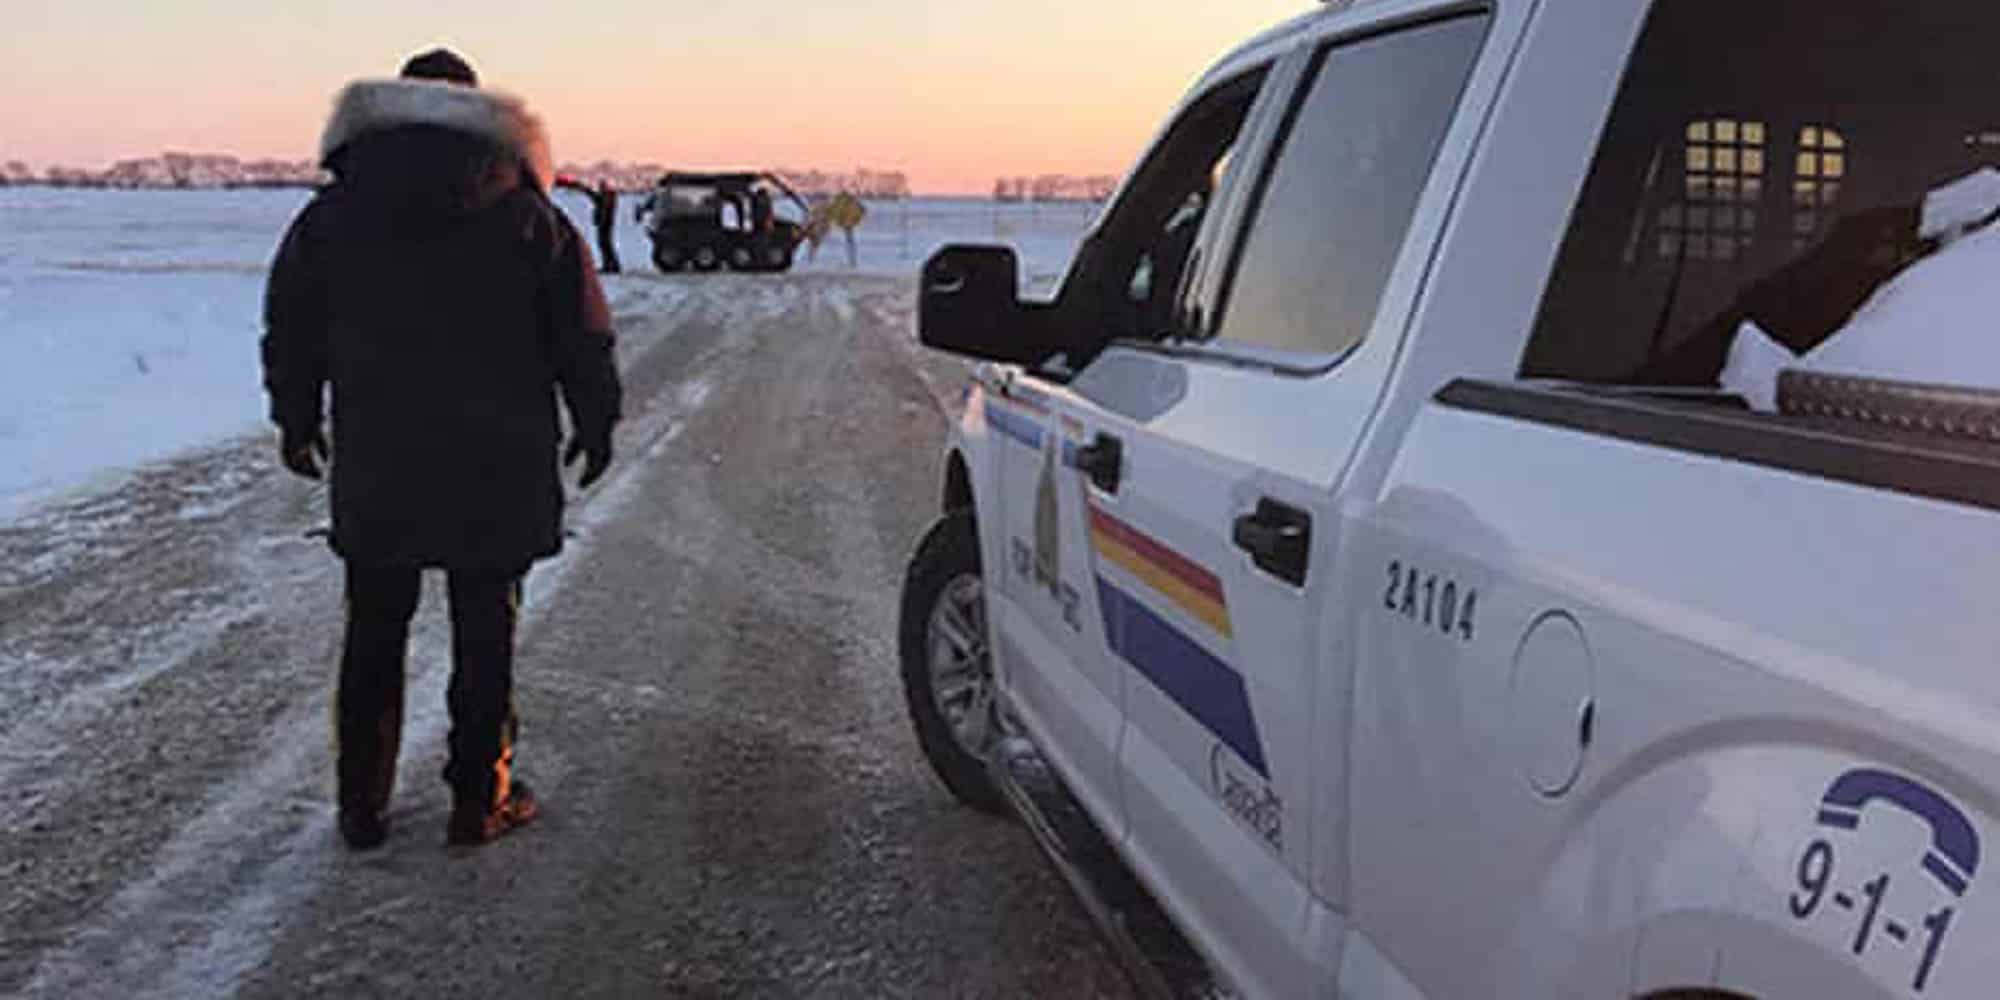 Το σημείο όπου βρέθηκαν νεκροί 4 μετανάστες στα σύνορα του Καναδά